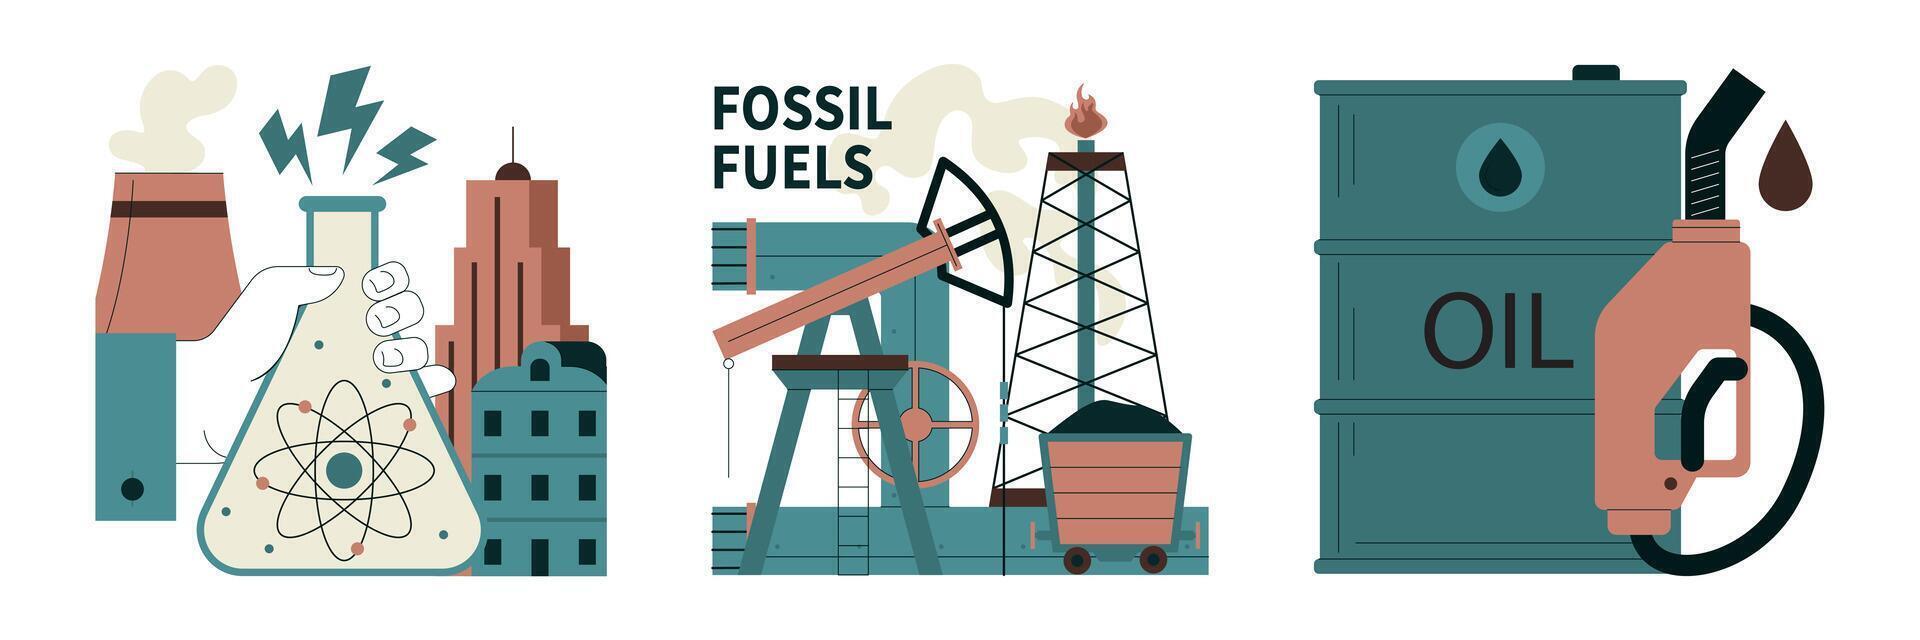 fósil combustible colocar. fósil recursos extracción y sus impacto en clima cambiar. vector